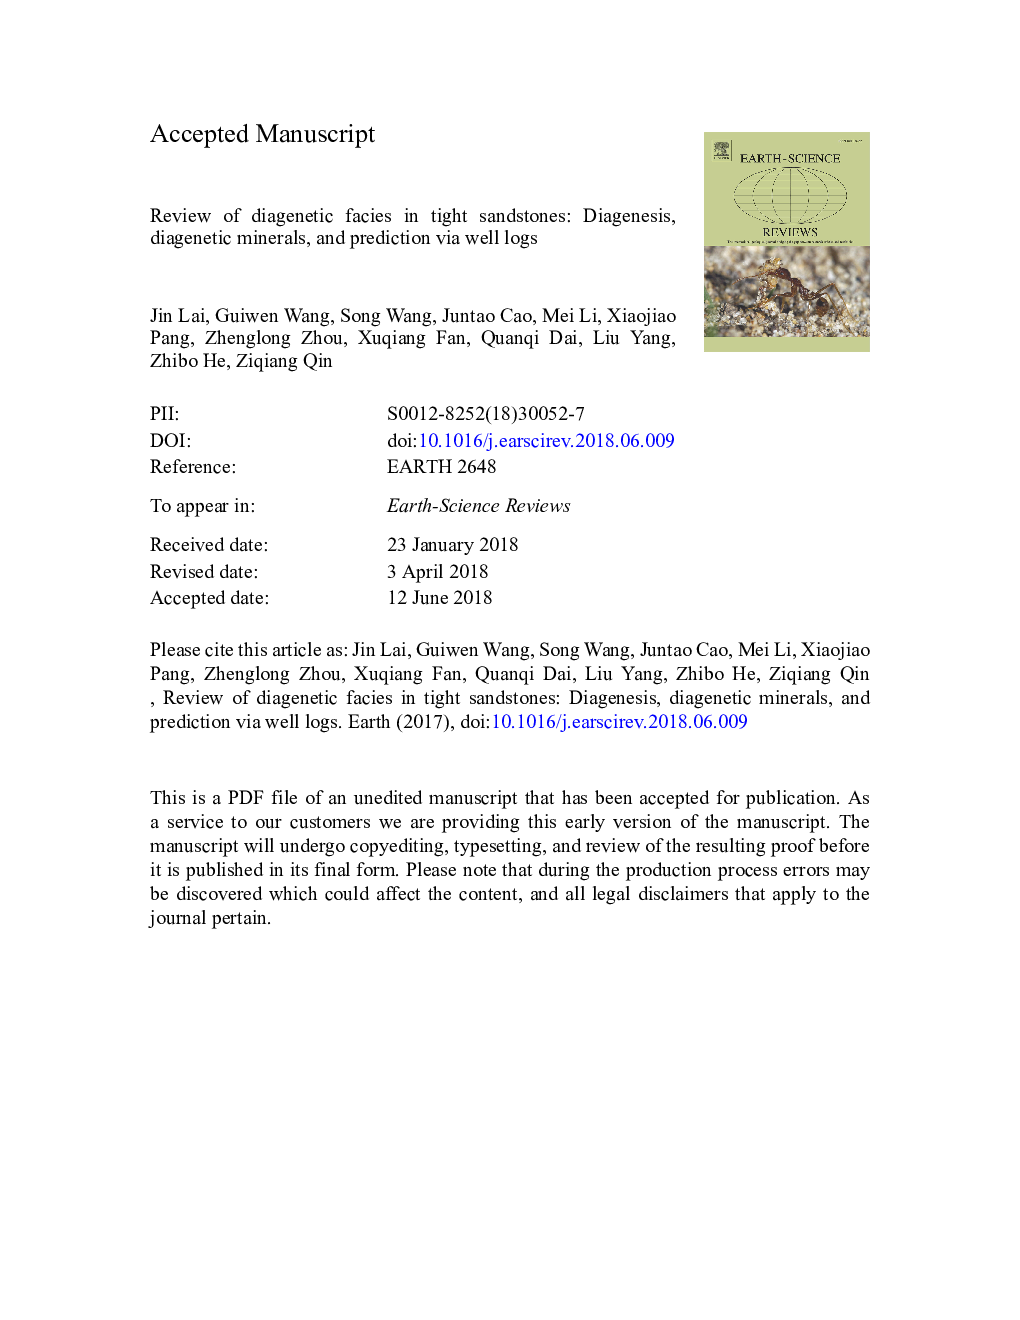 بررسی رخساره های دیگنتیک در ماسه سنگ تنگ: دیگنز، مواد معدنی دیگنتیک و پیش بینی آن از طریق حفره های خوب